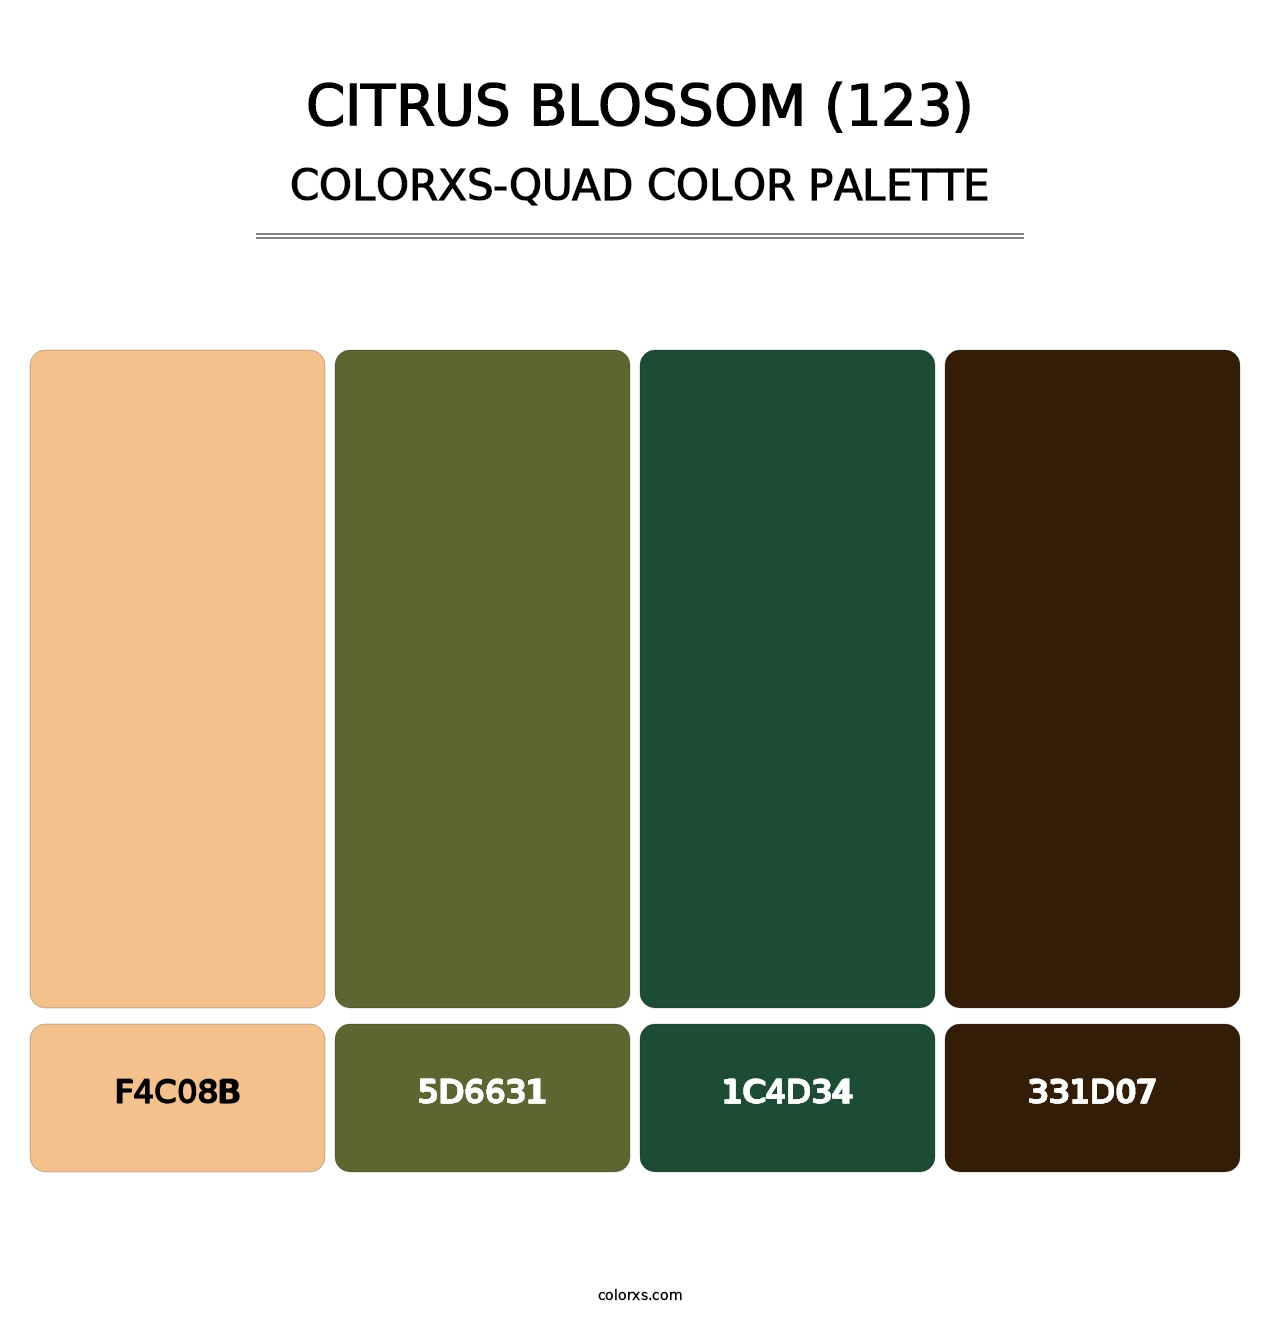 Citrus Blossom (123) - Colorxs Quad Palette